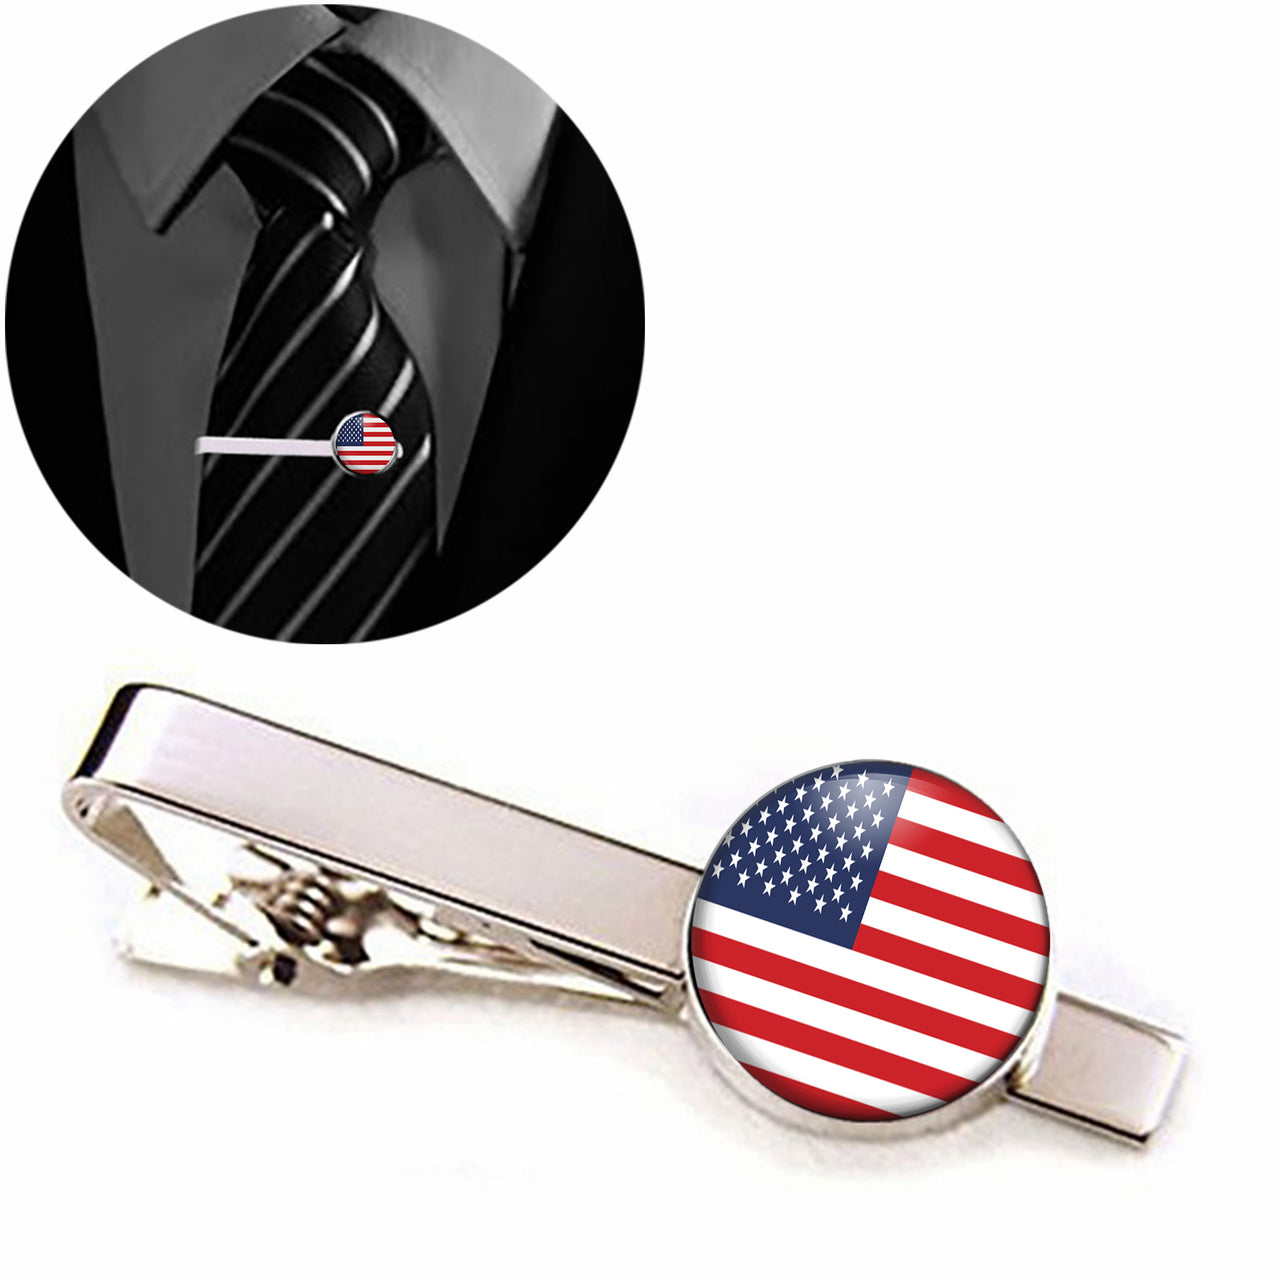 USA Flag Designed Tie Clips